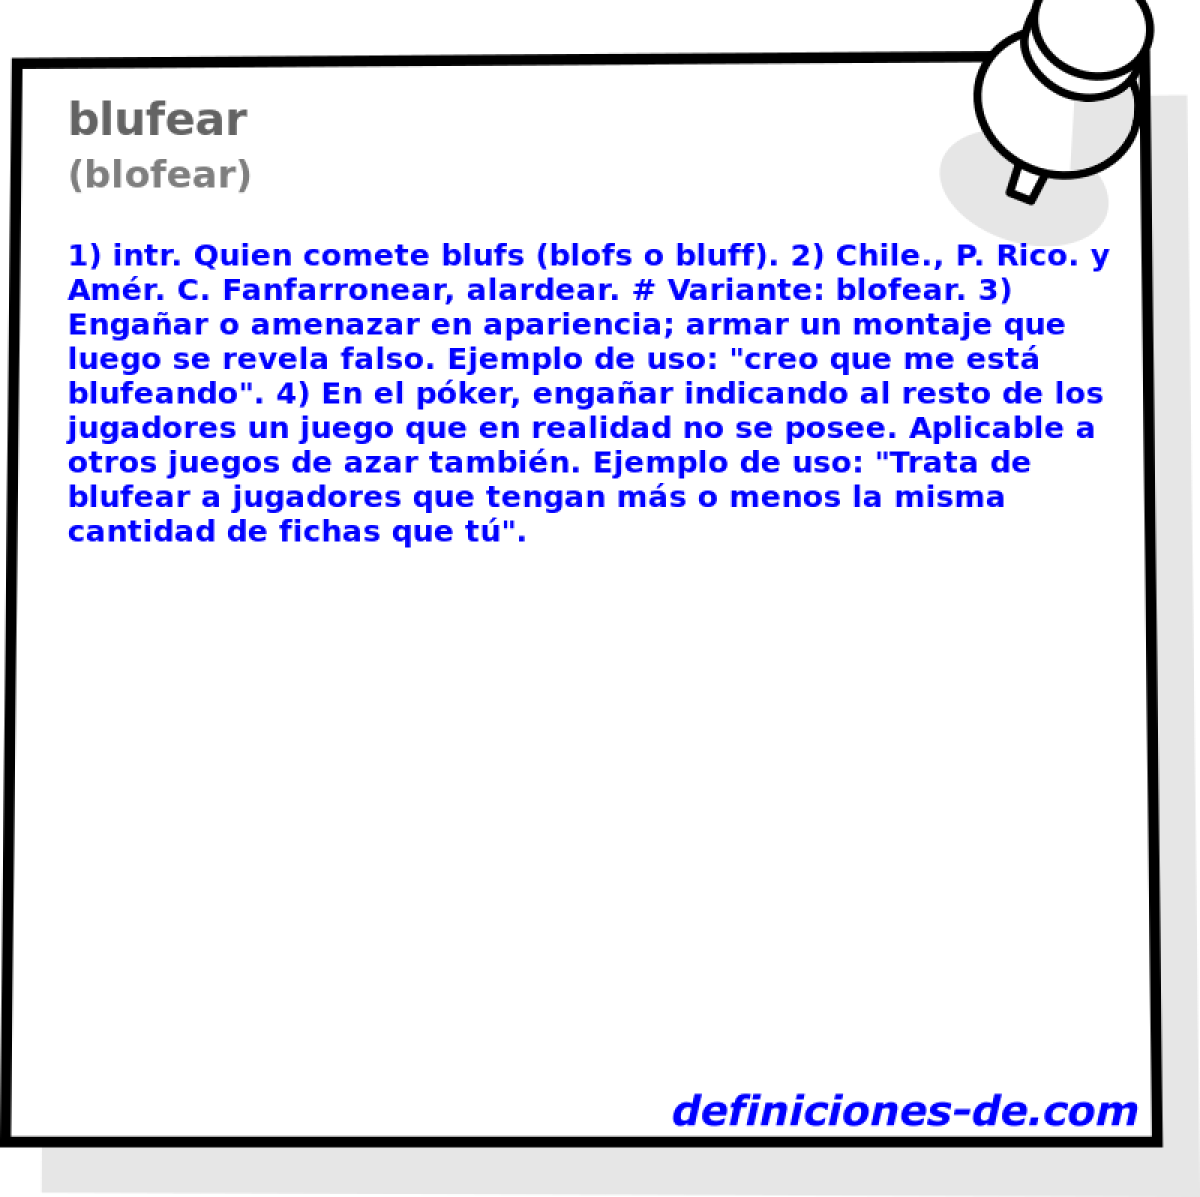 blufear (blofear)